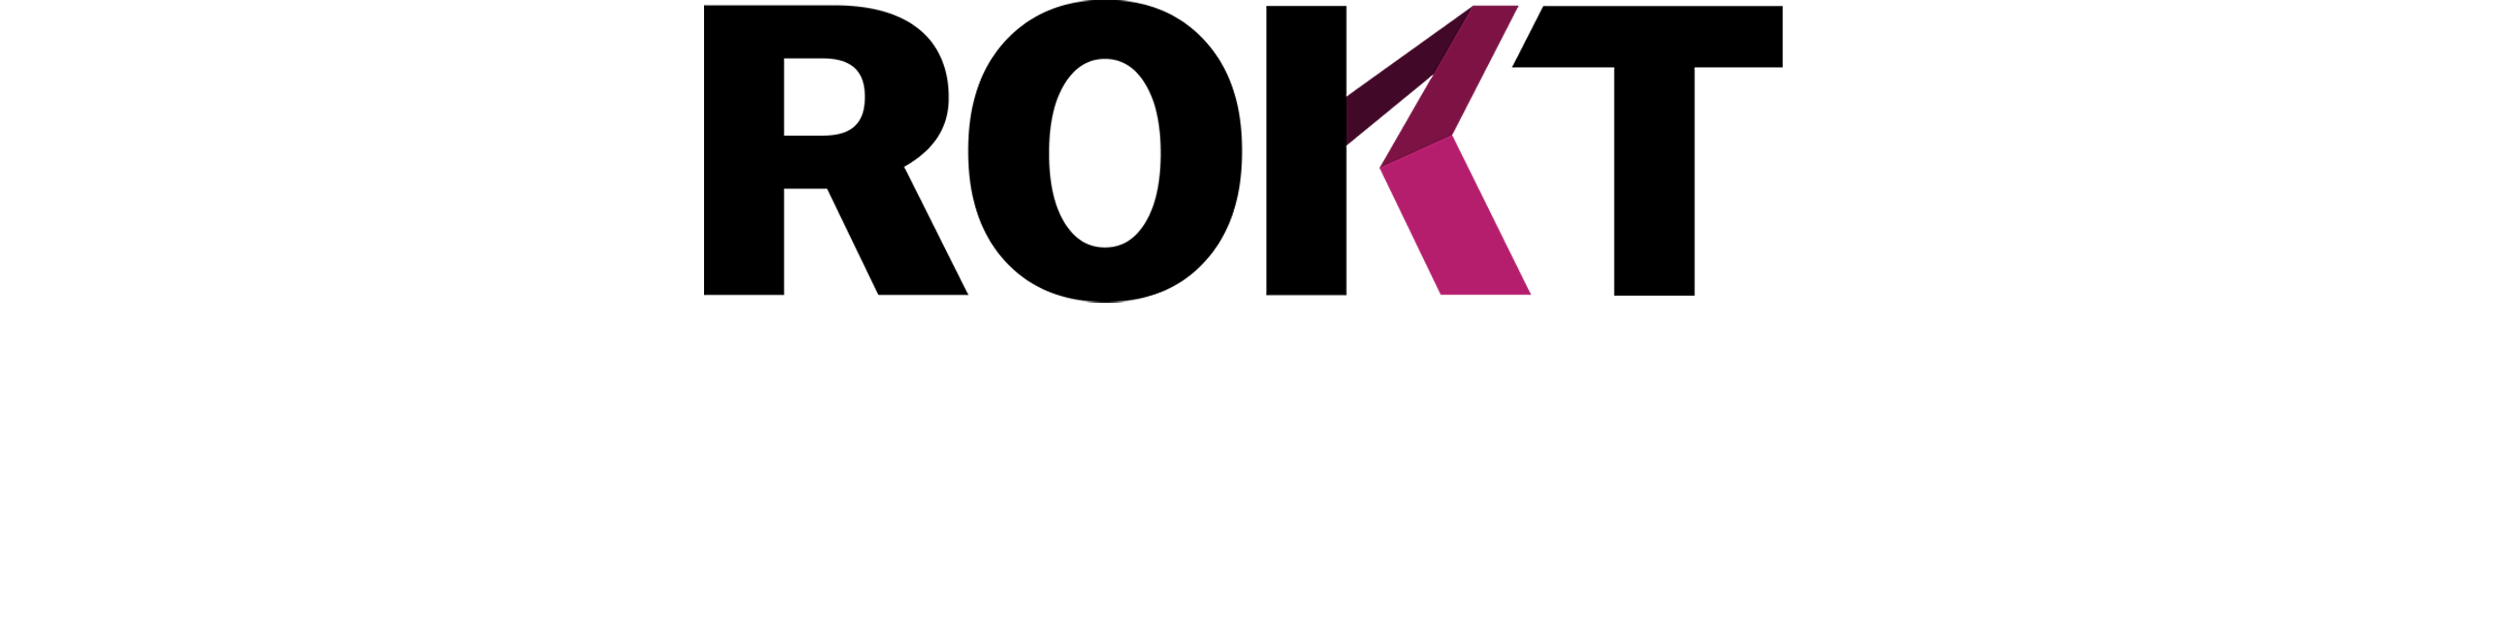 ROKT logo